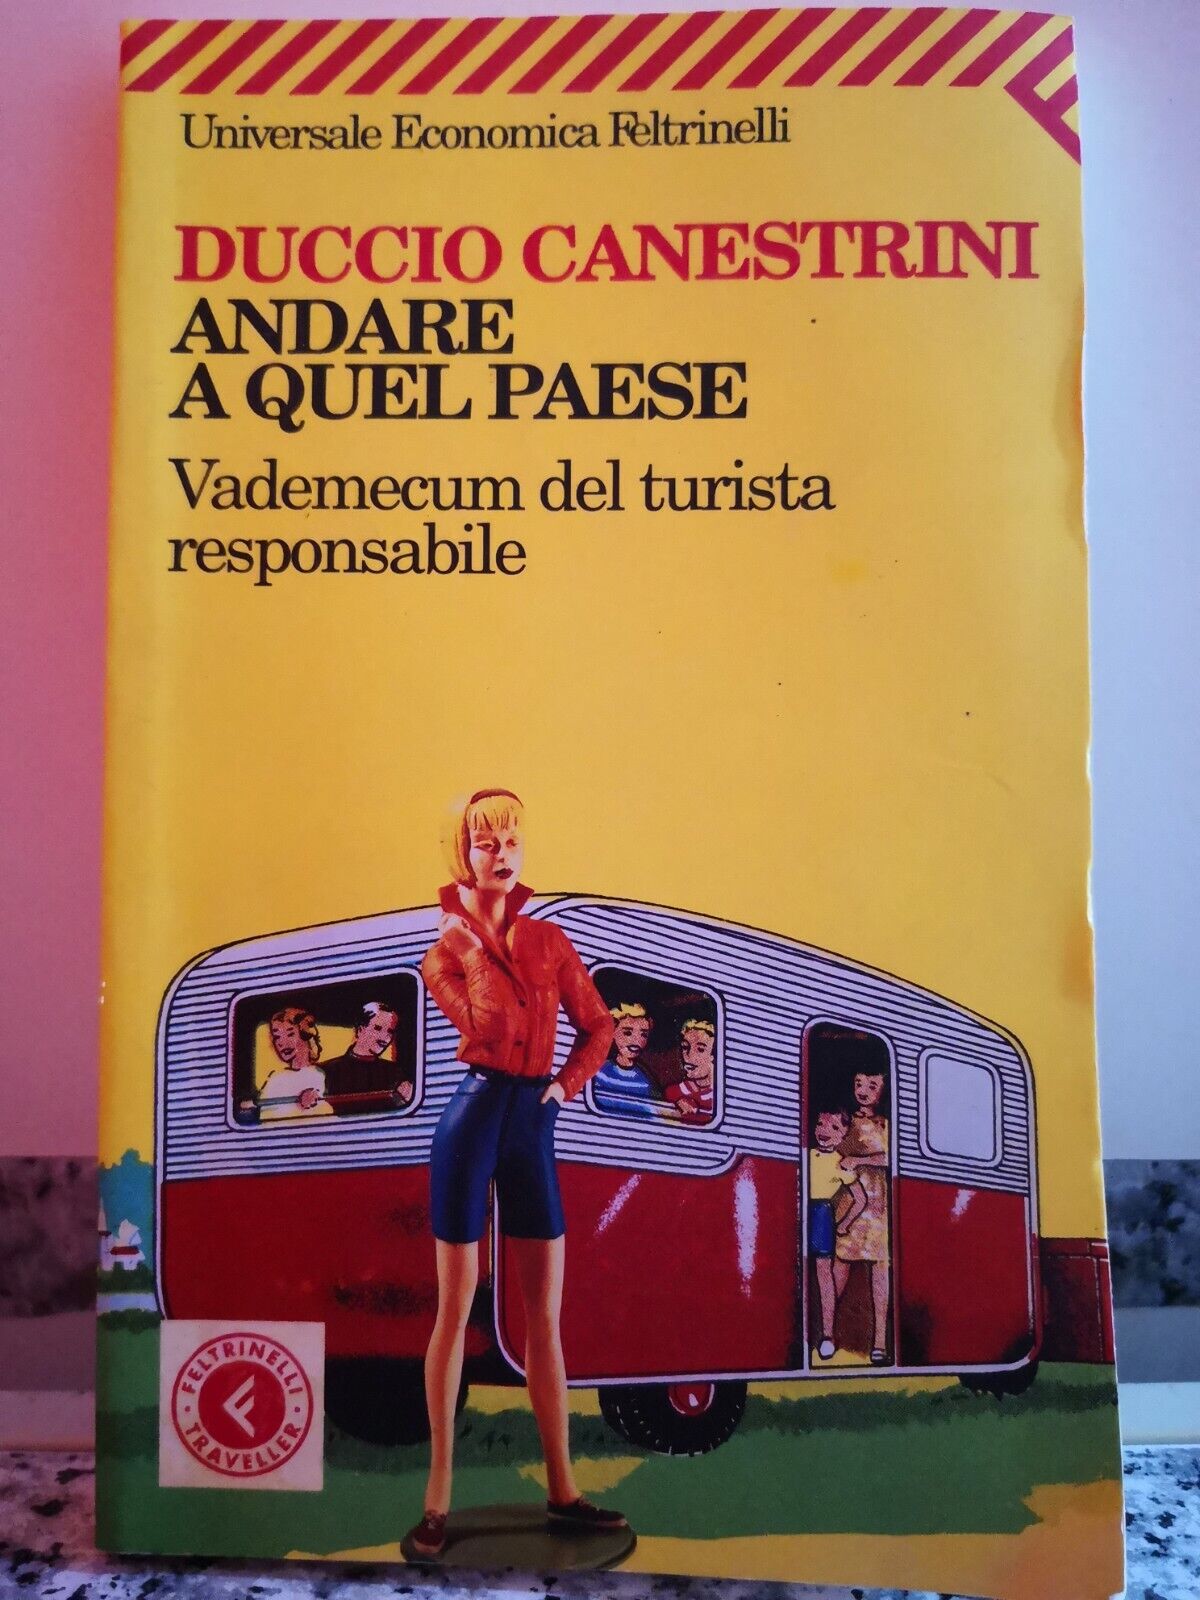  Andare a quel paese di Duccio Canestrini,  2008,  Feltrinelli-F